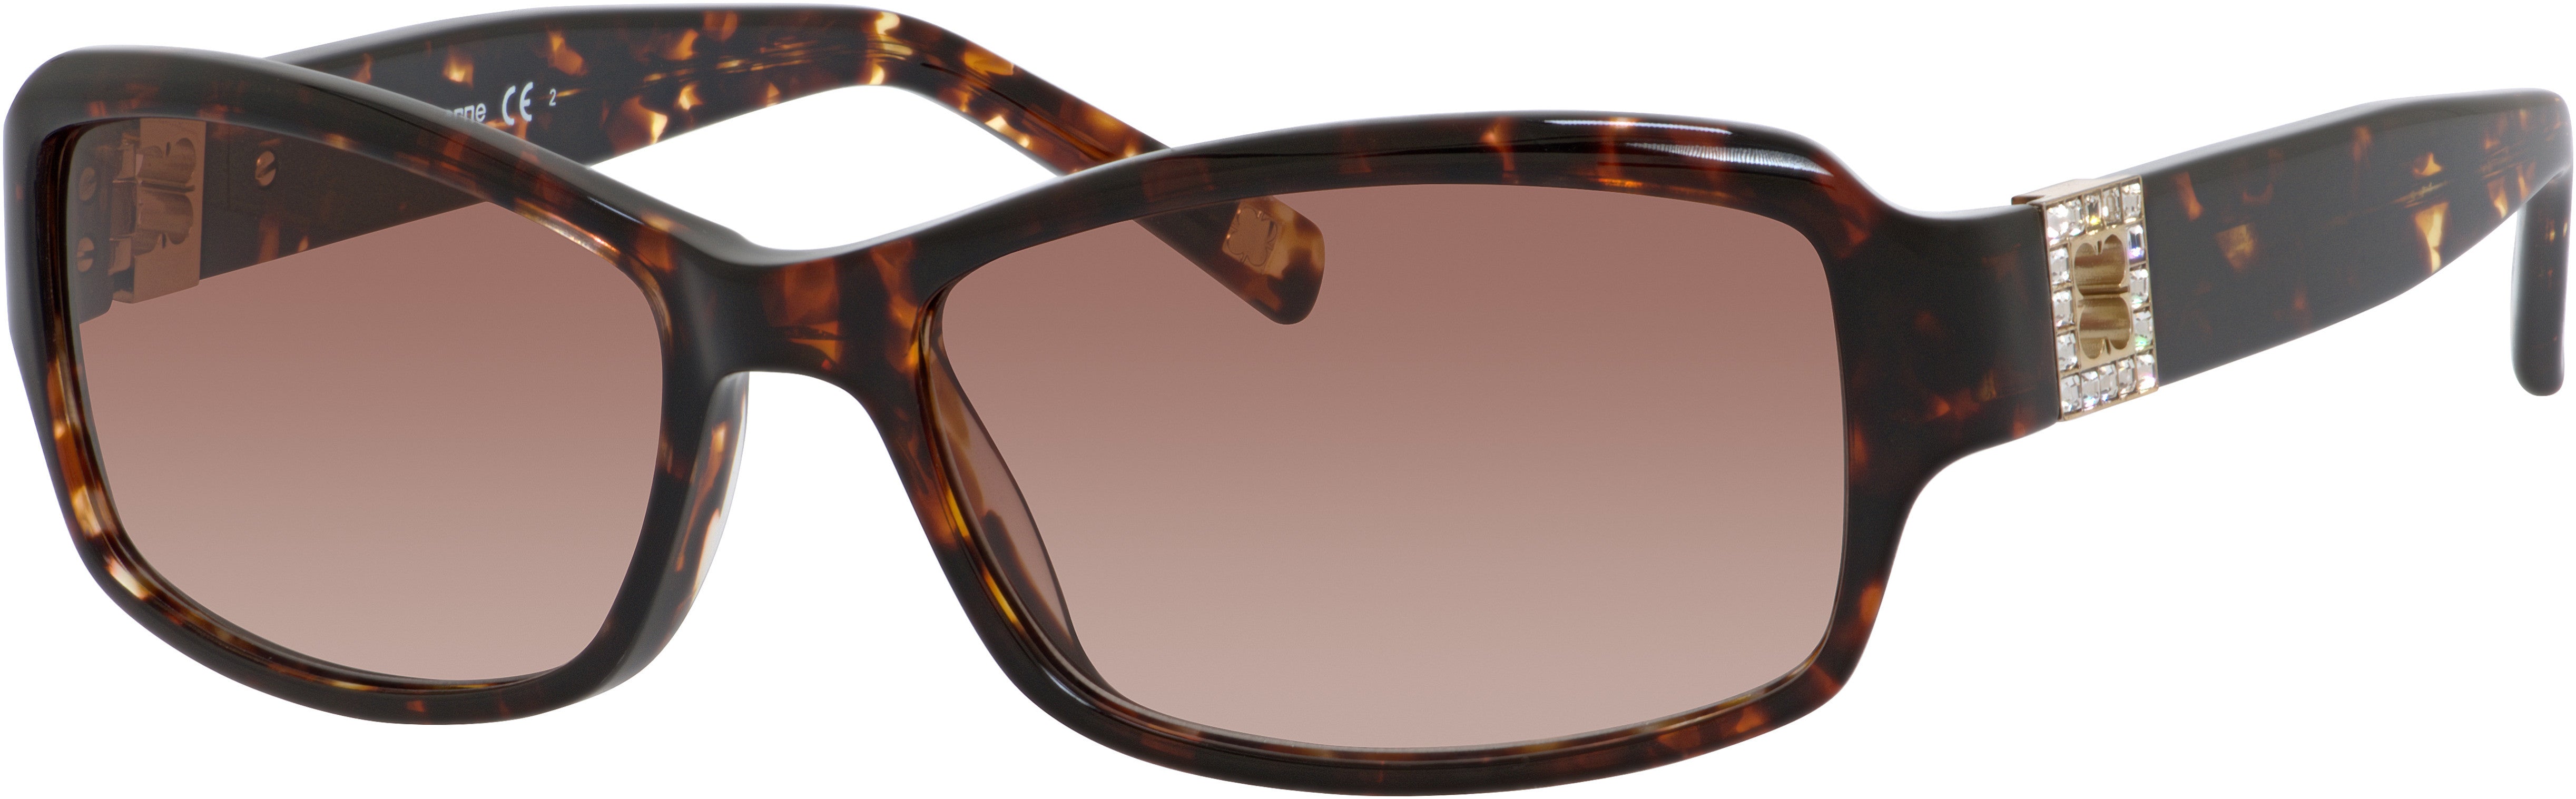  Liz Claiborne 534/S Rectangular Sunglasses 0JTX-0JTX  Dark Chocolate Marble (02 Brown Gradient)